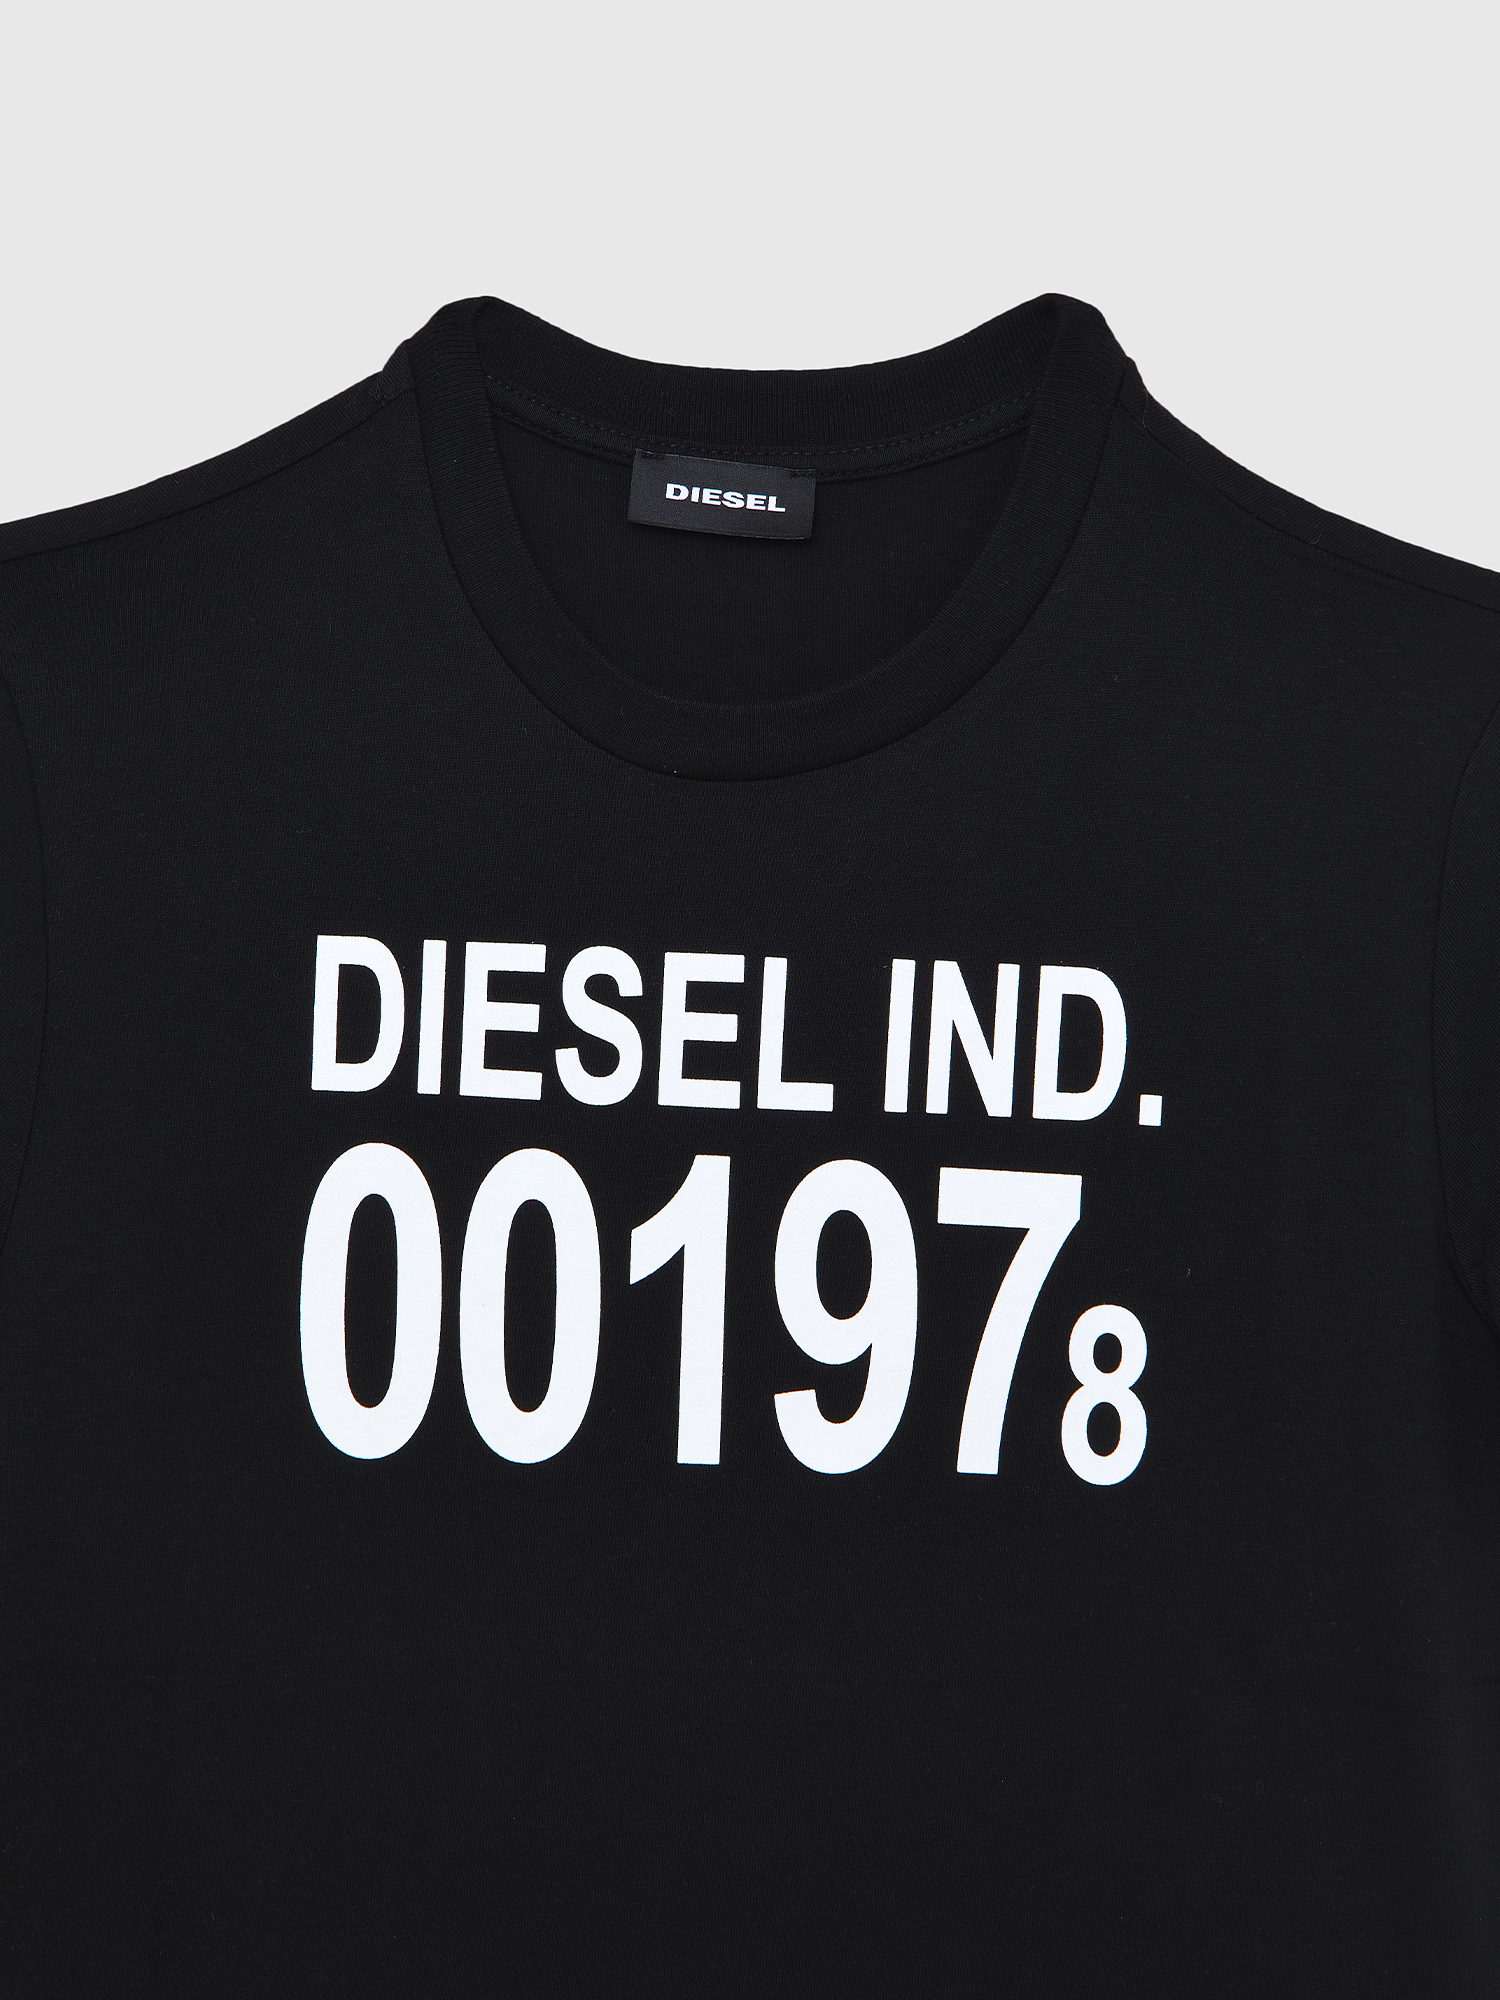 Diesel - TDIEGO001978, Black - Image 3